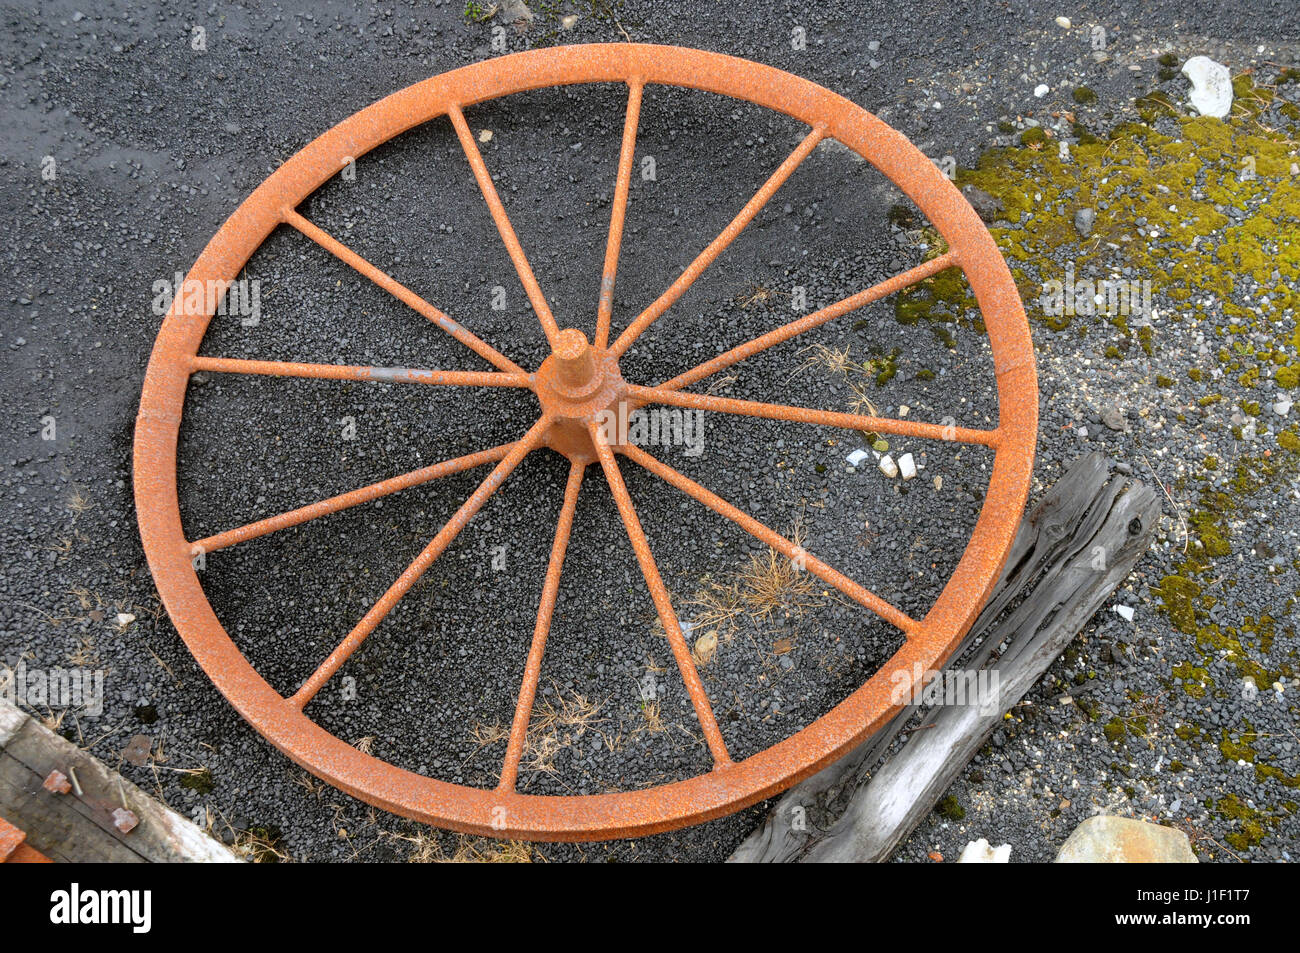 Ein Stahlrad liegt möglicherweise aus einer Mine gewundenen Gang, als Exponat im Bergbau Denniston Welterbe-Aufstellungsort, in der Nähe von Westport, Südinsel, Neuseeland. Stockfoto